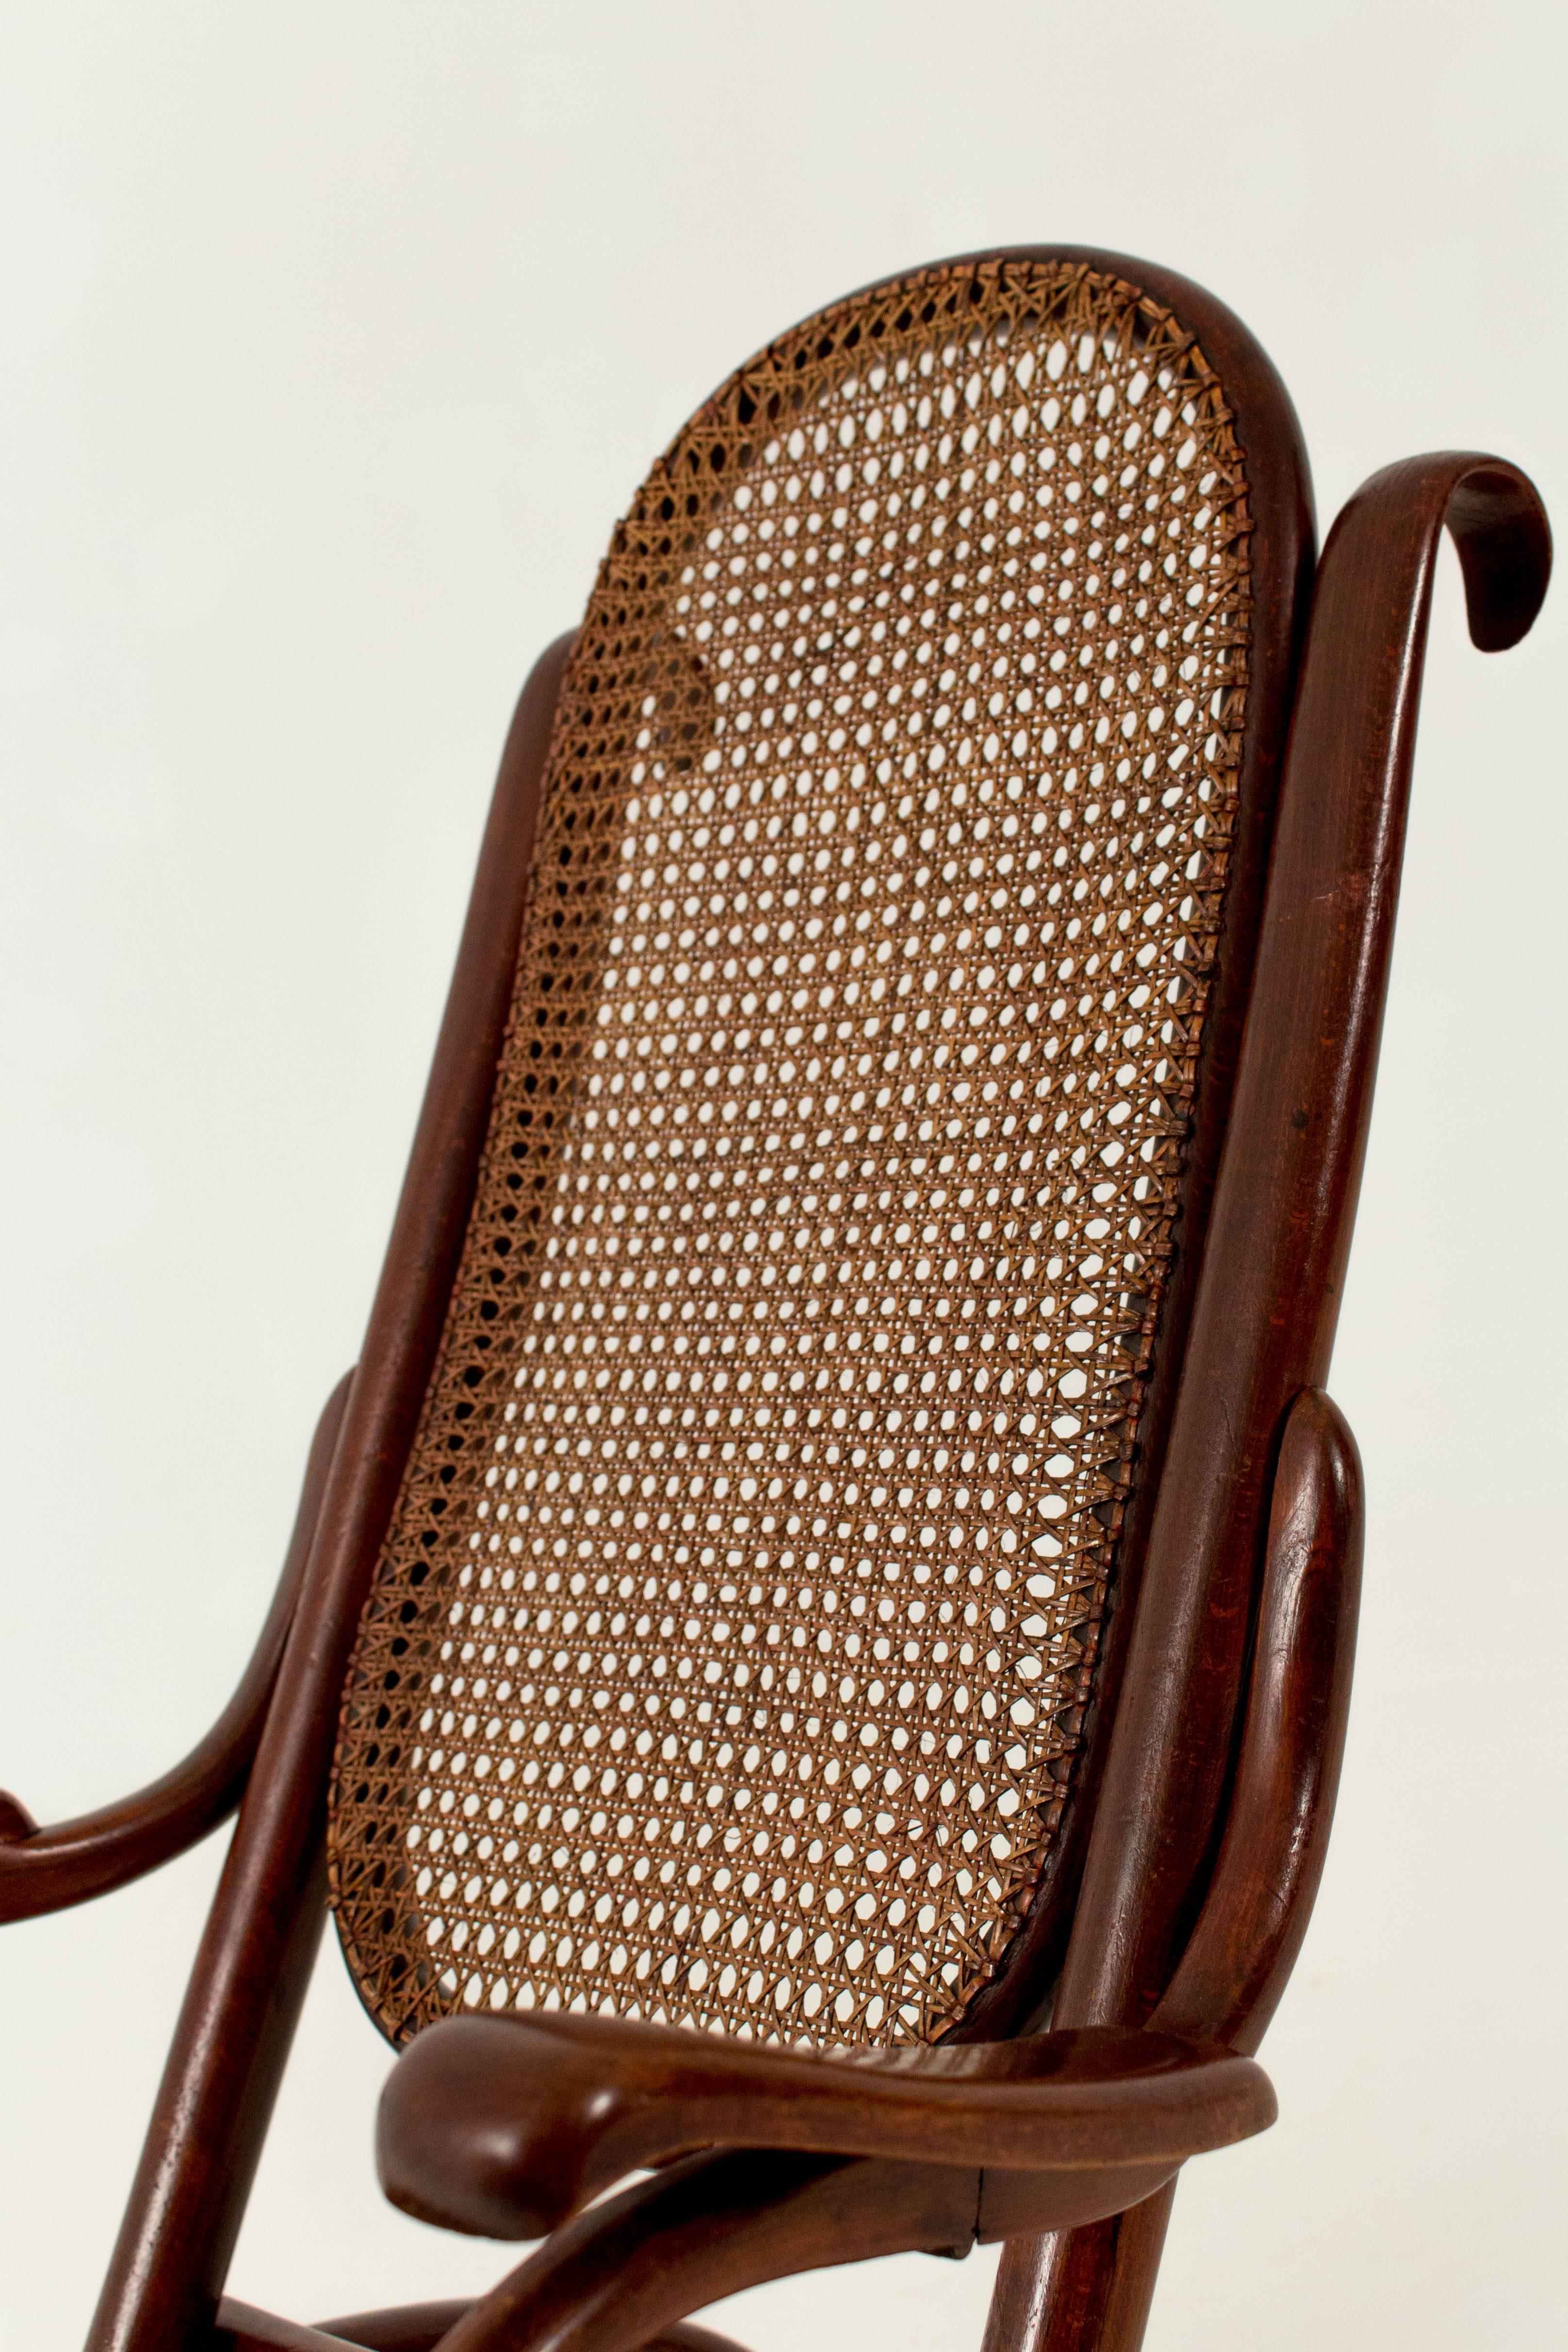 Hand-Woven Thonet Fold Chair Austria 1890s